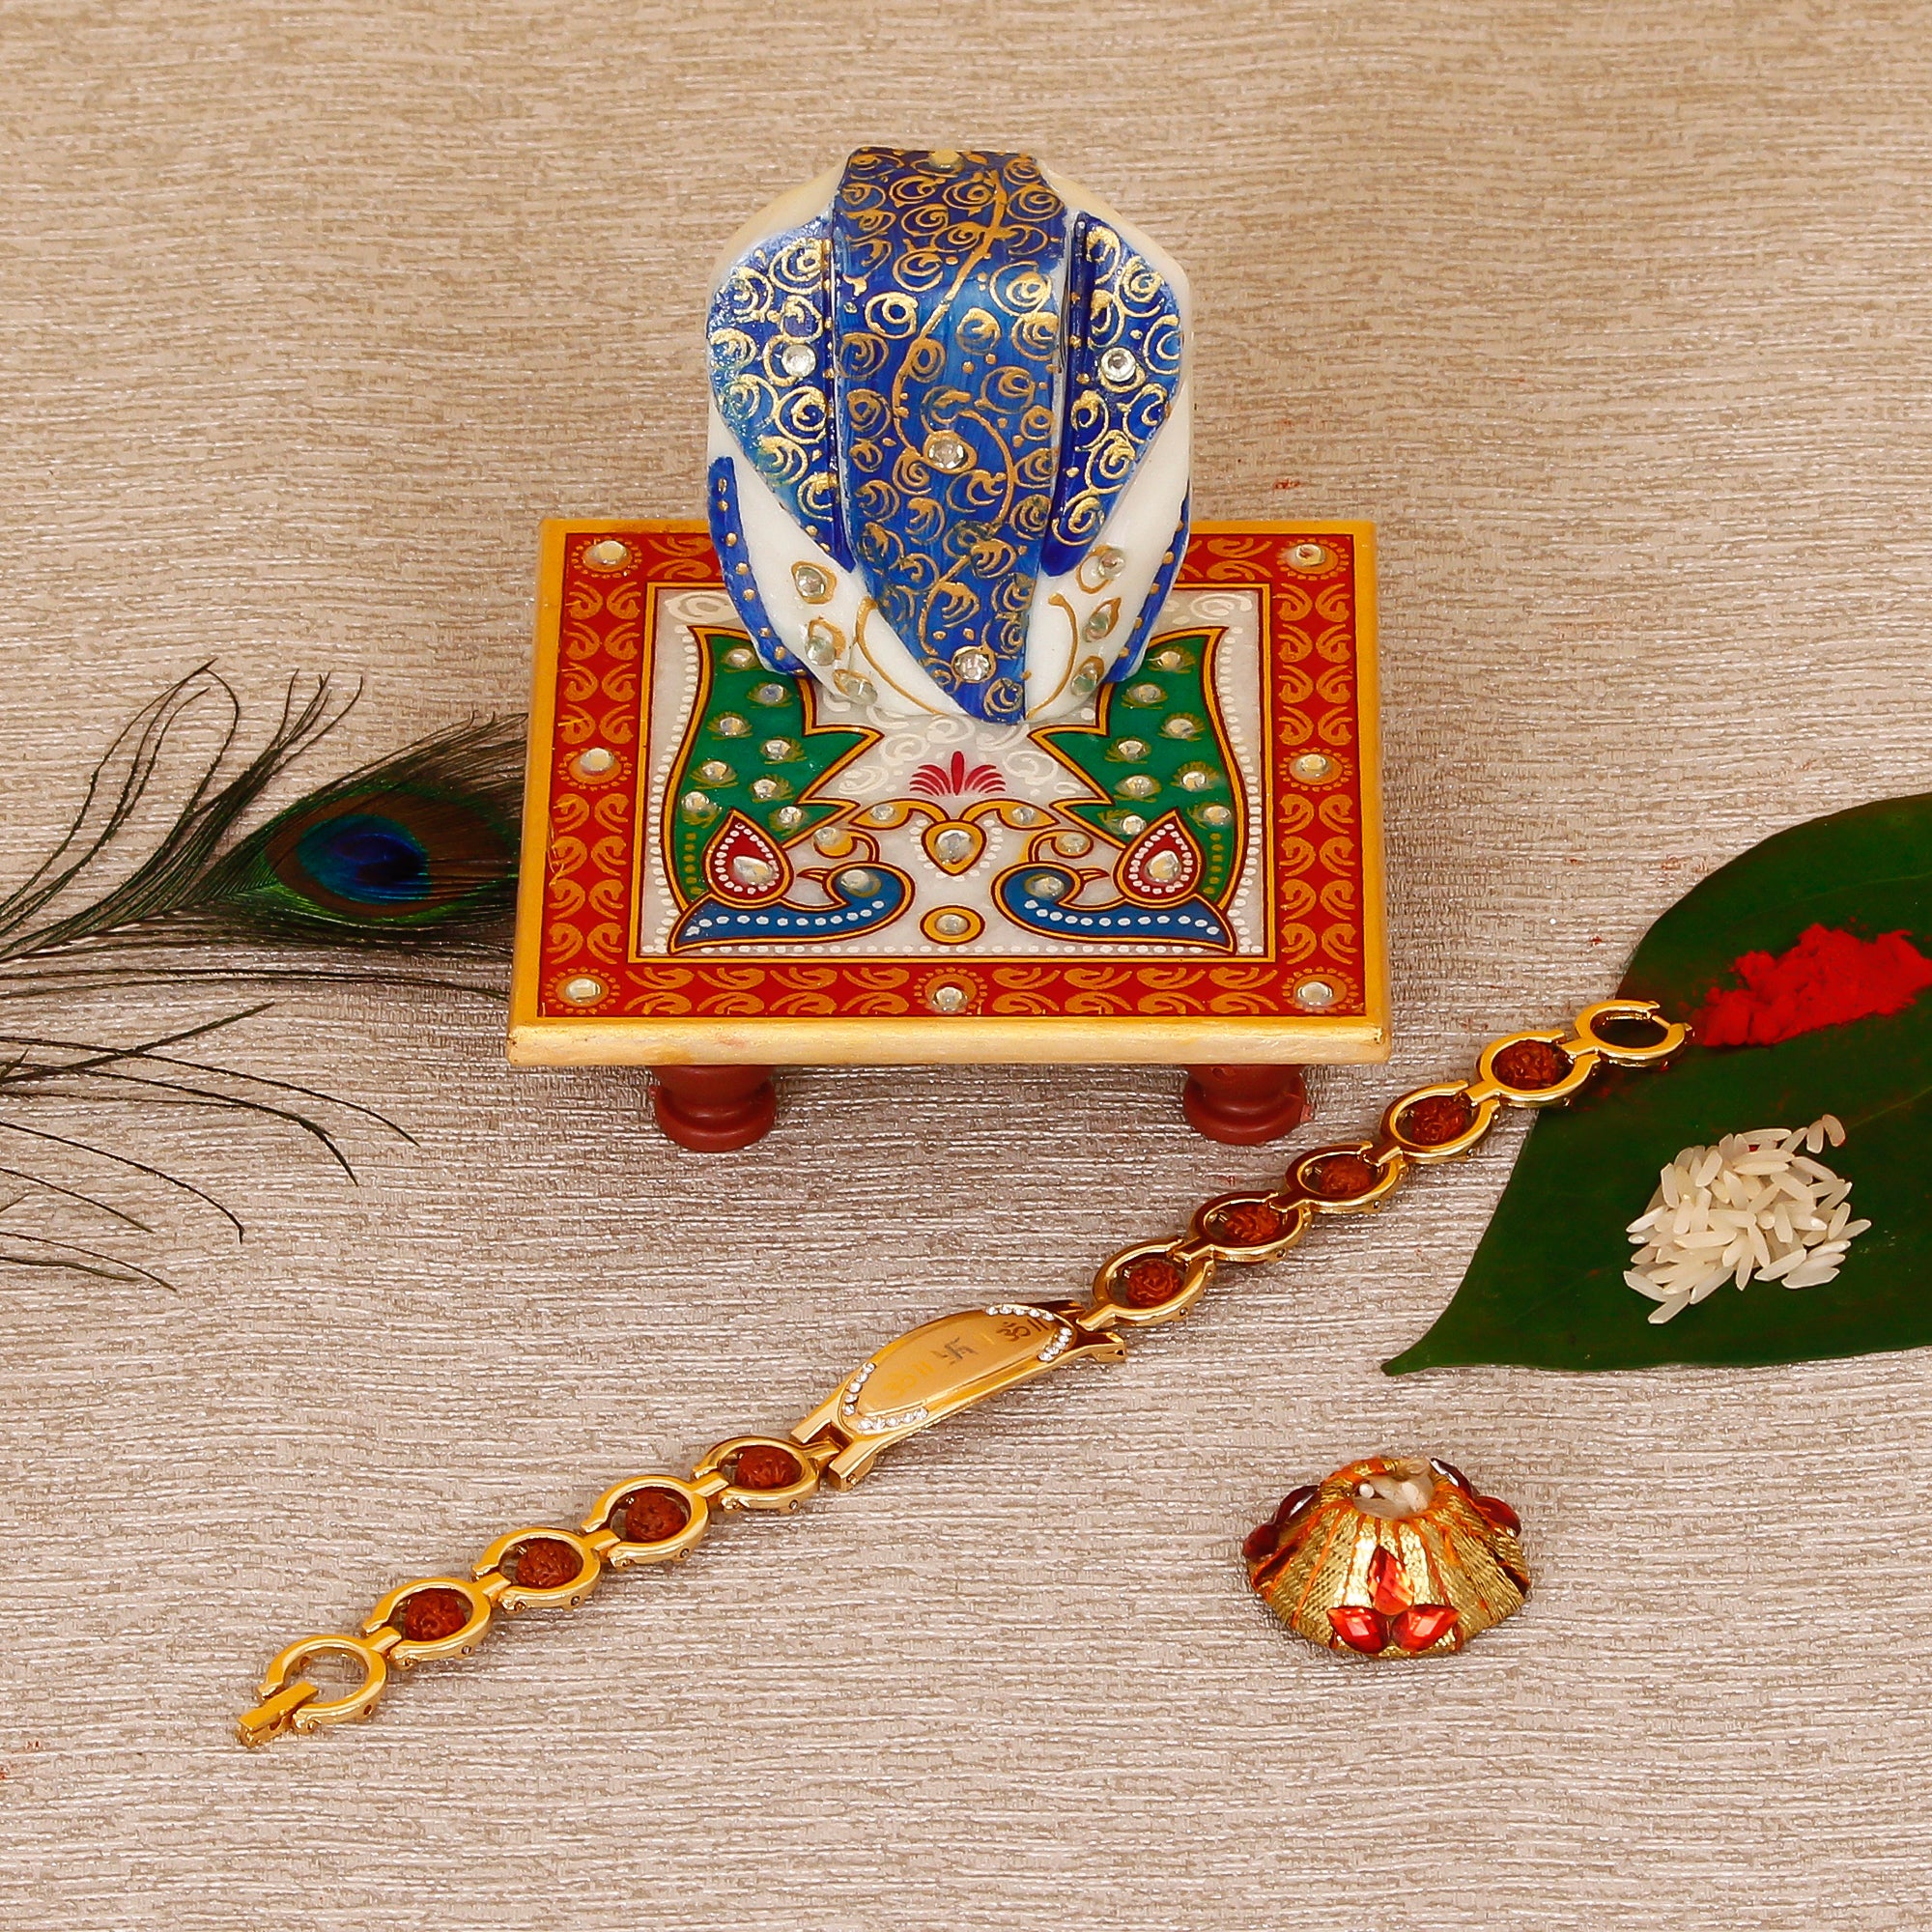 Designer Bracelet Religious Rakhi with Lord Ganesha on Marble Chowki and Roli Tikka Matki